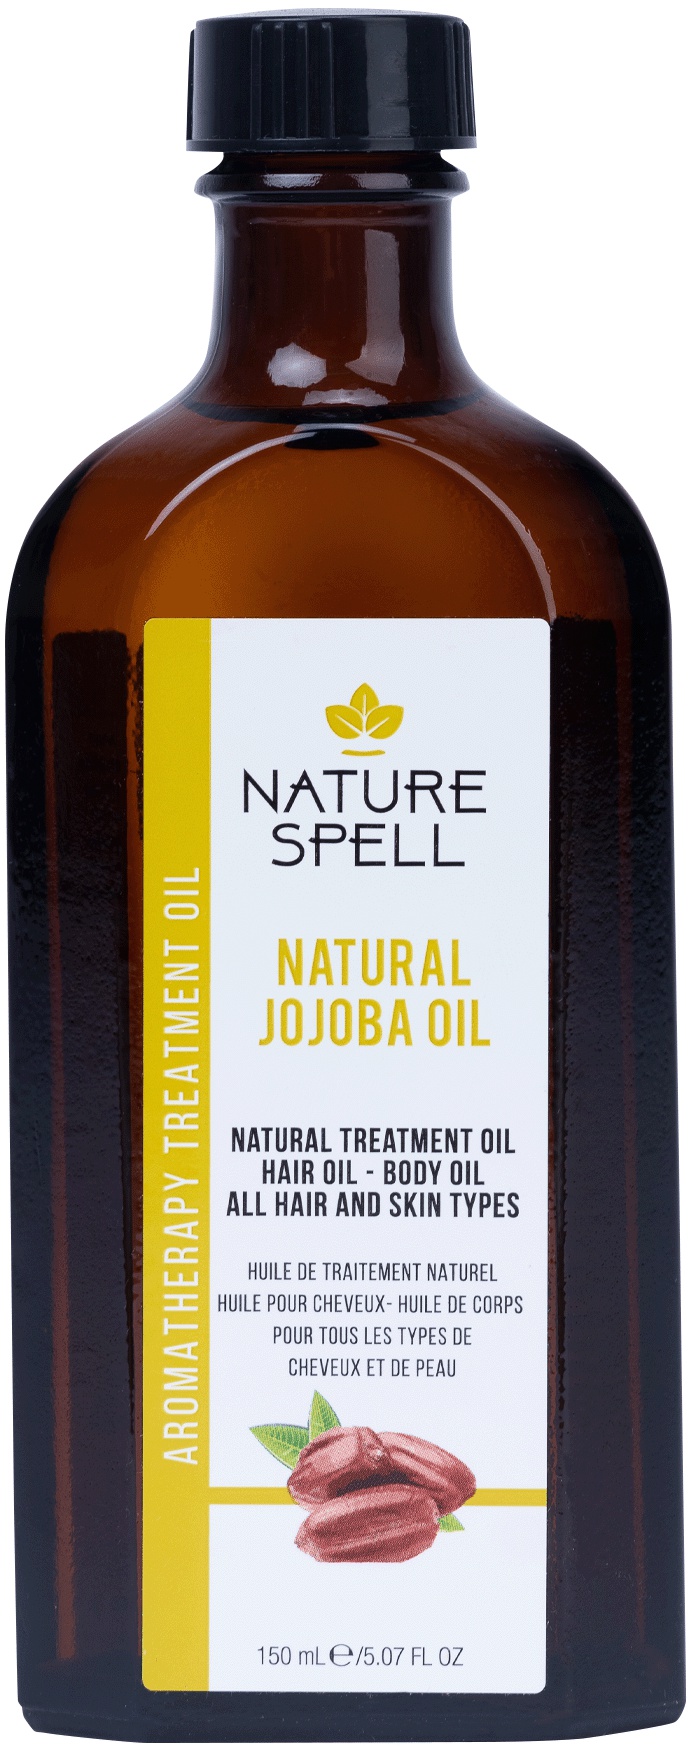 NATURE SPELL Jojoba Oil For Hair & Skin